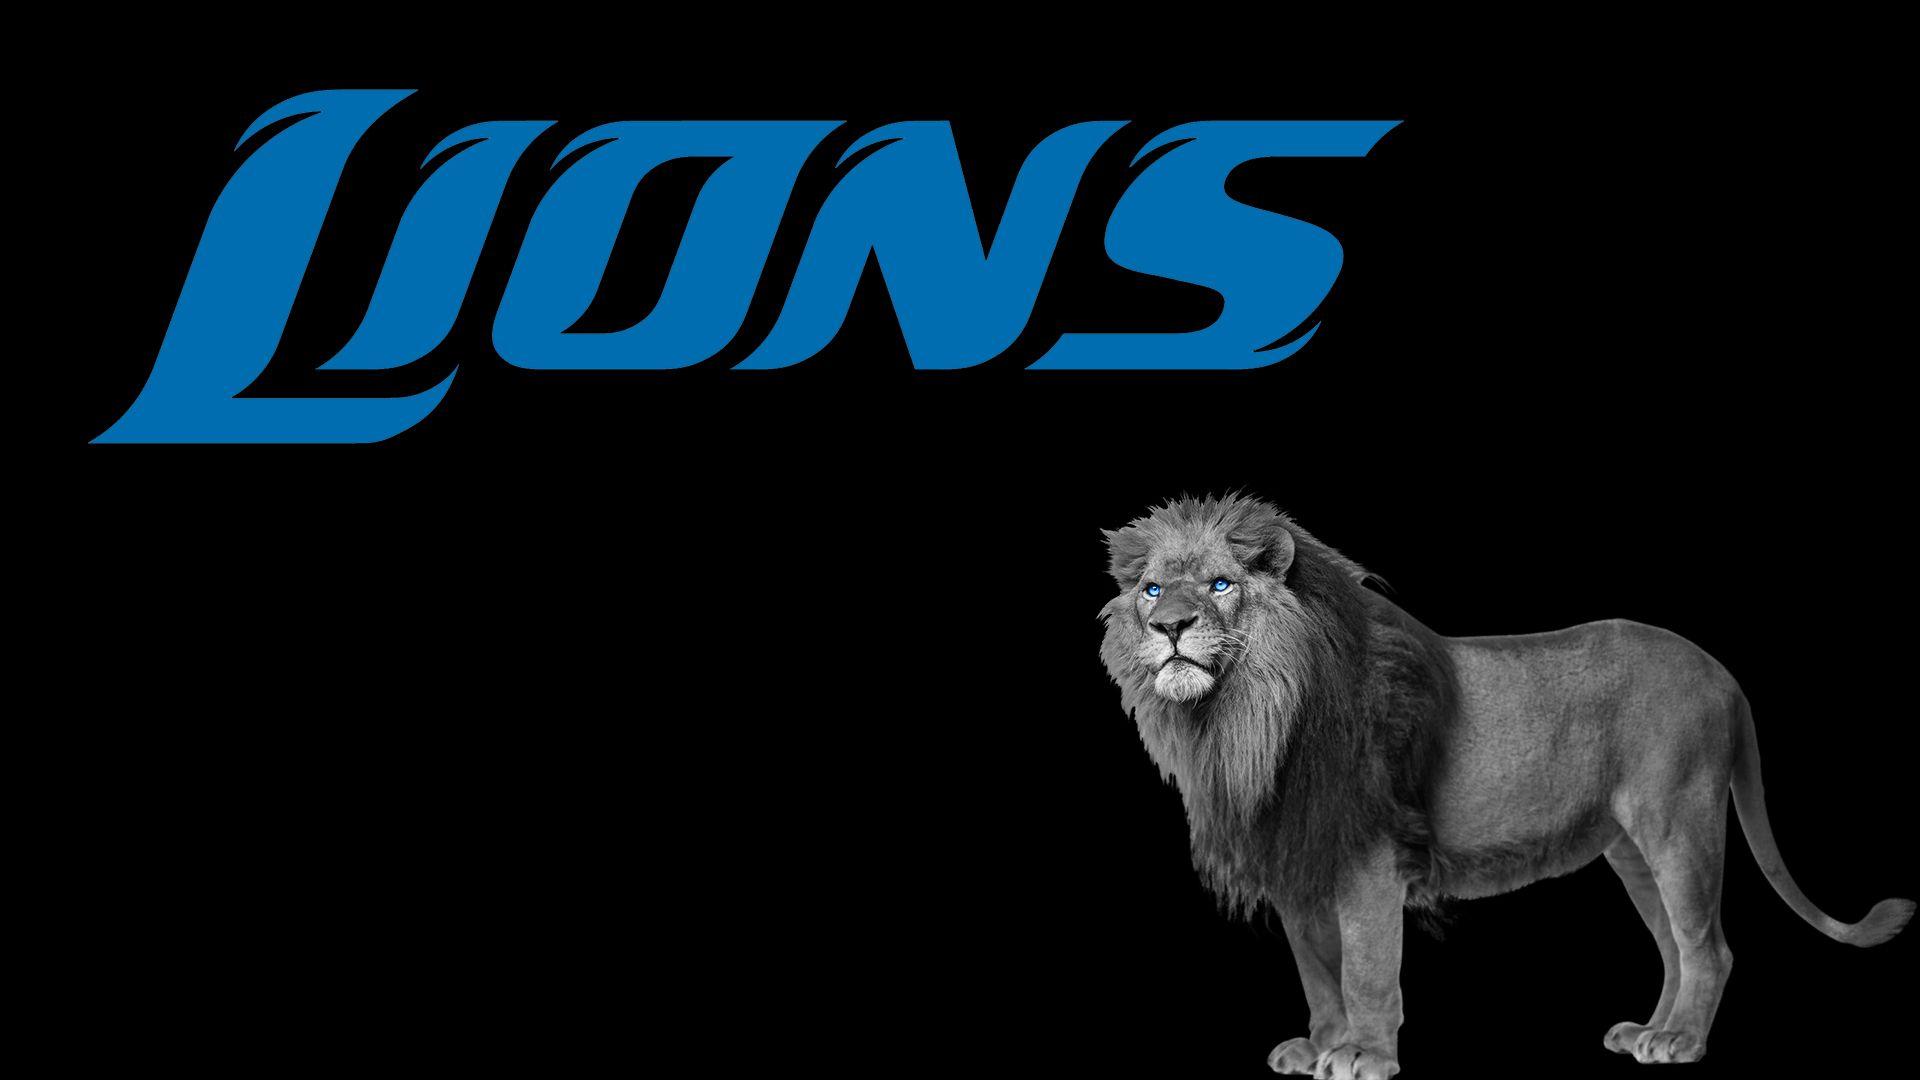 Detroit Lions Desktop Wallpapers - Top Free Detroit Lions Desktop ...